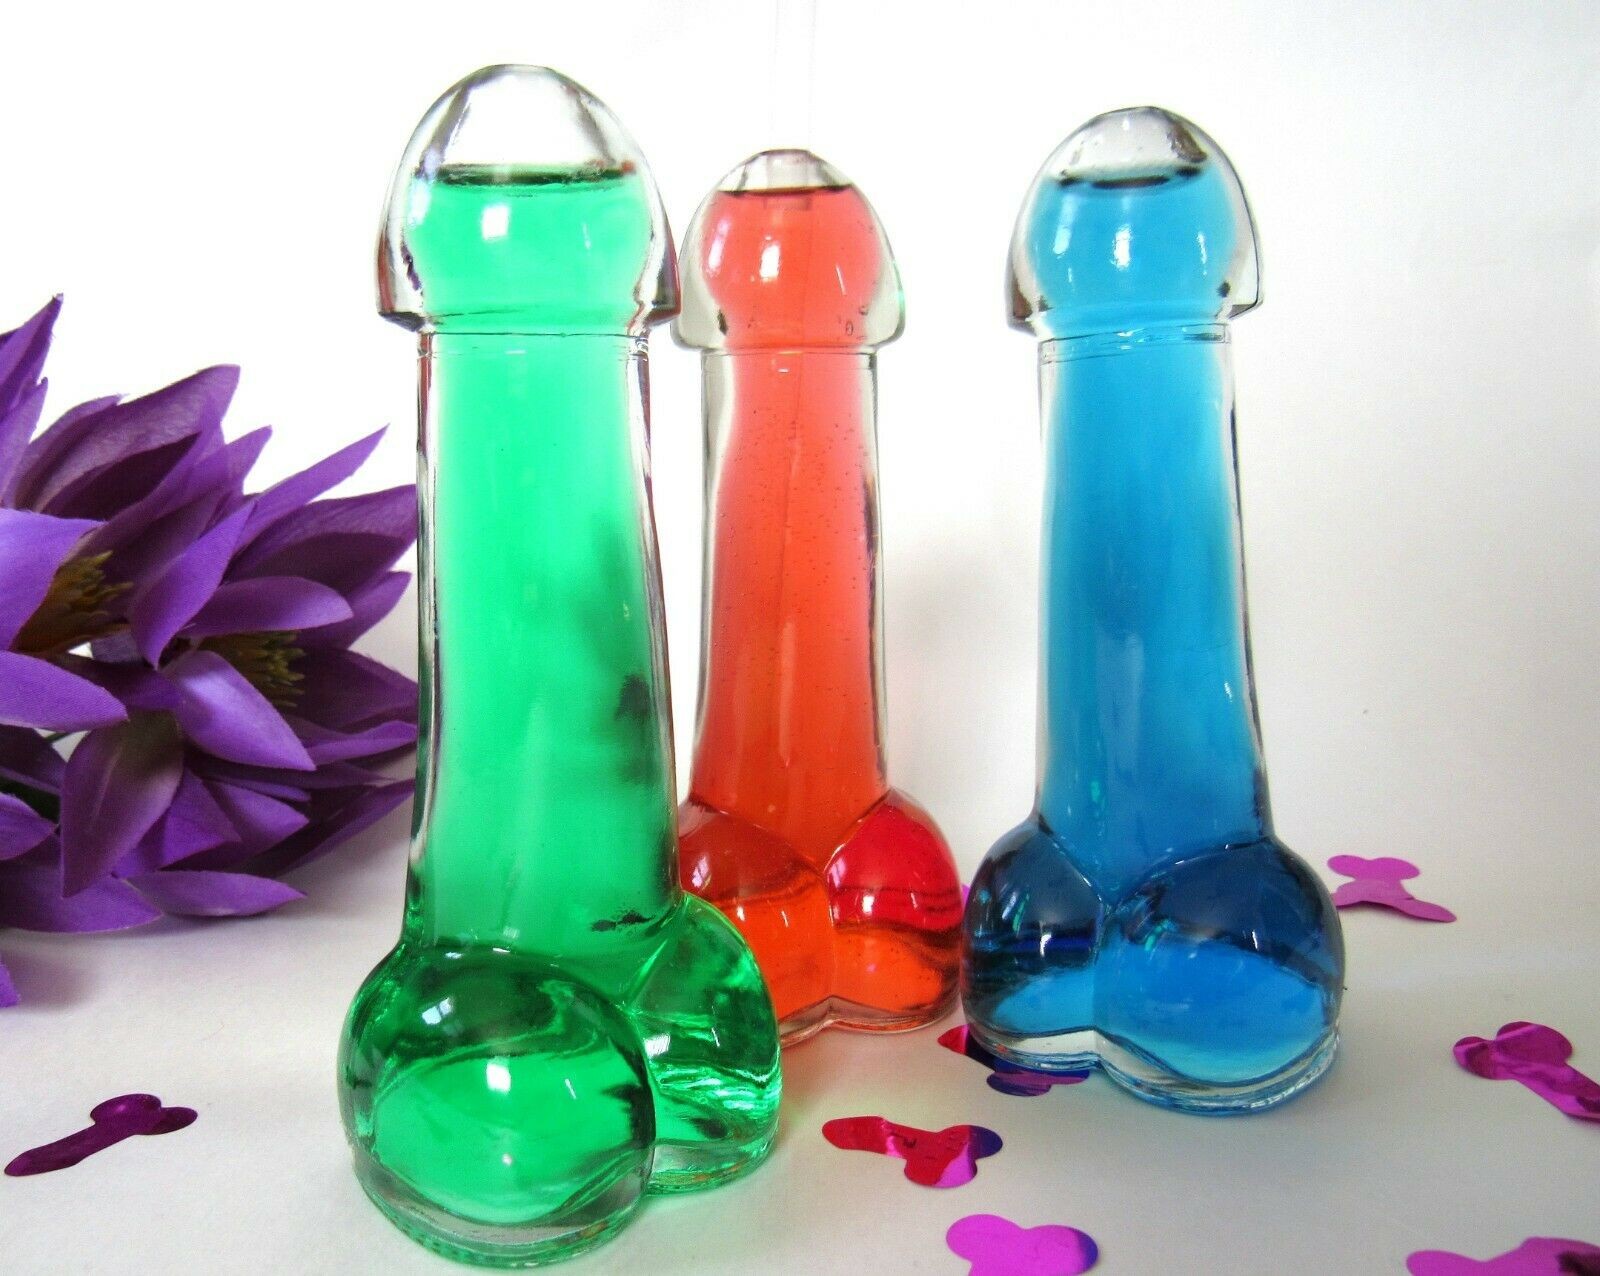 阴茎玻璃 - 有趣的杯子